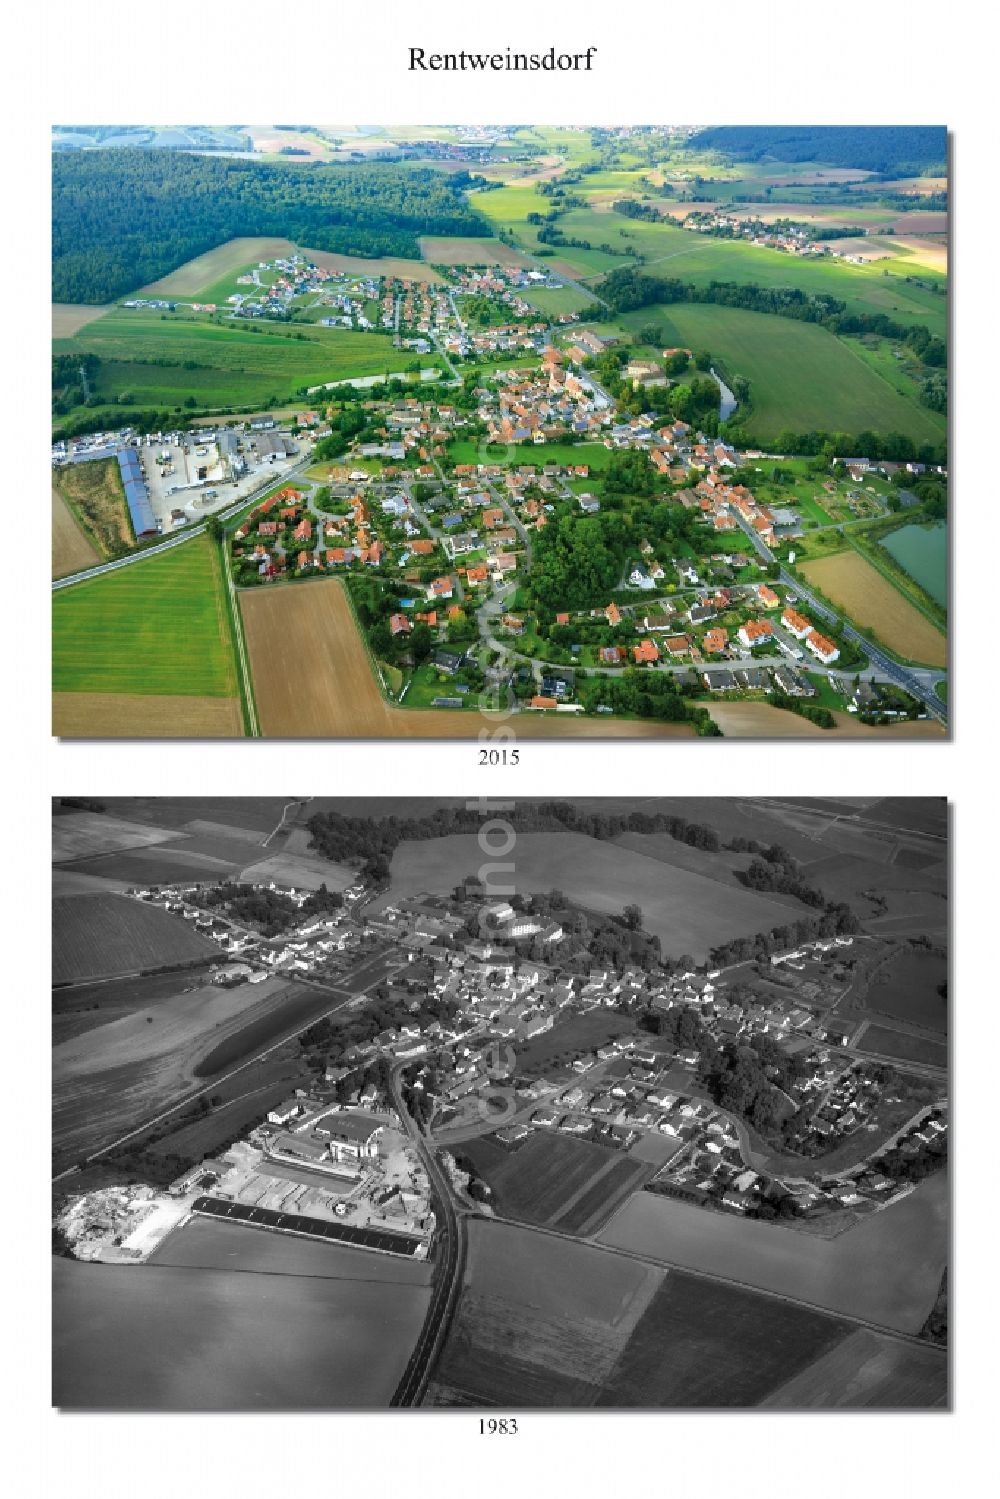 Rentweinsdorf from the bird's eye view: 1983 and 2015 village - view change of Rentweinsdorf in the state Bavaria